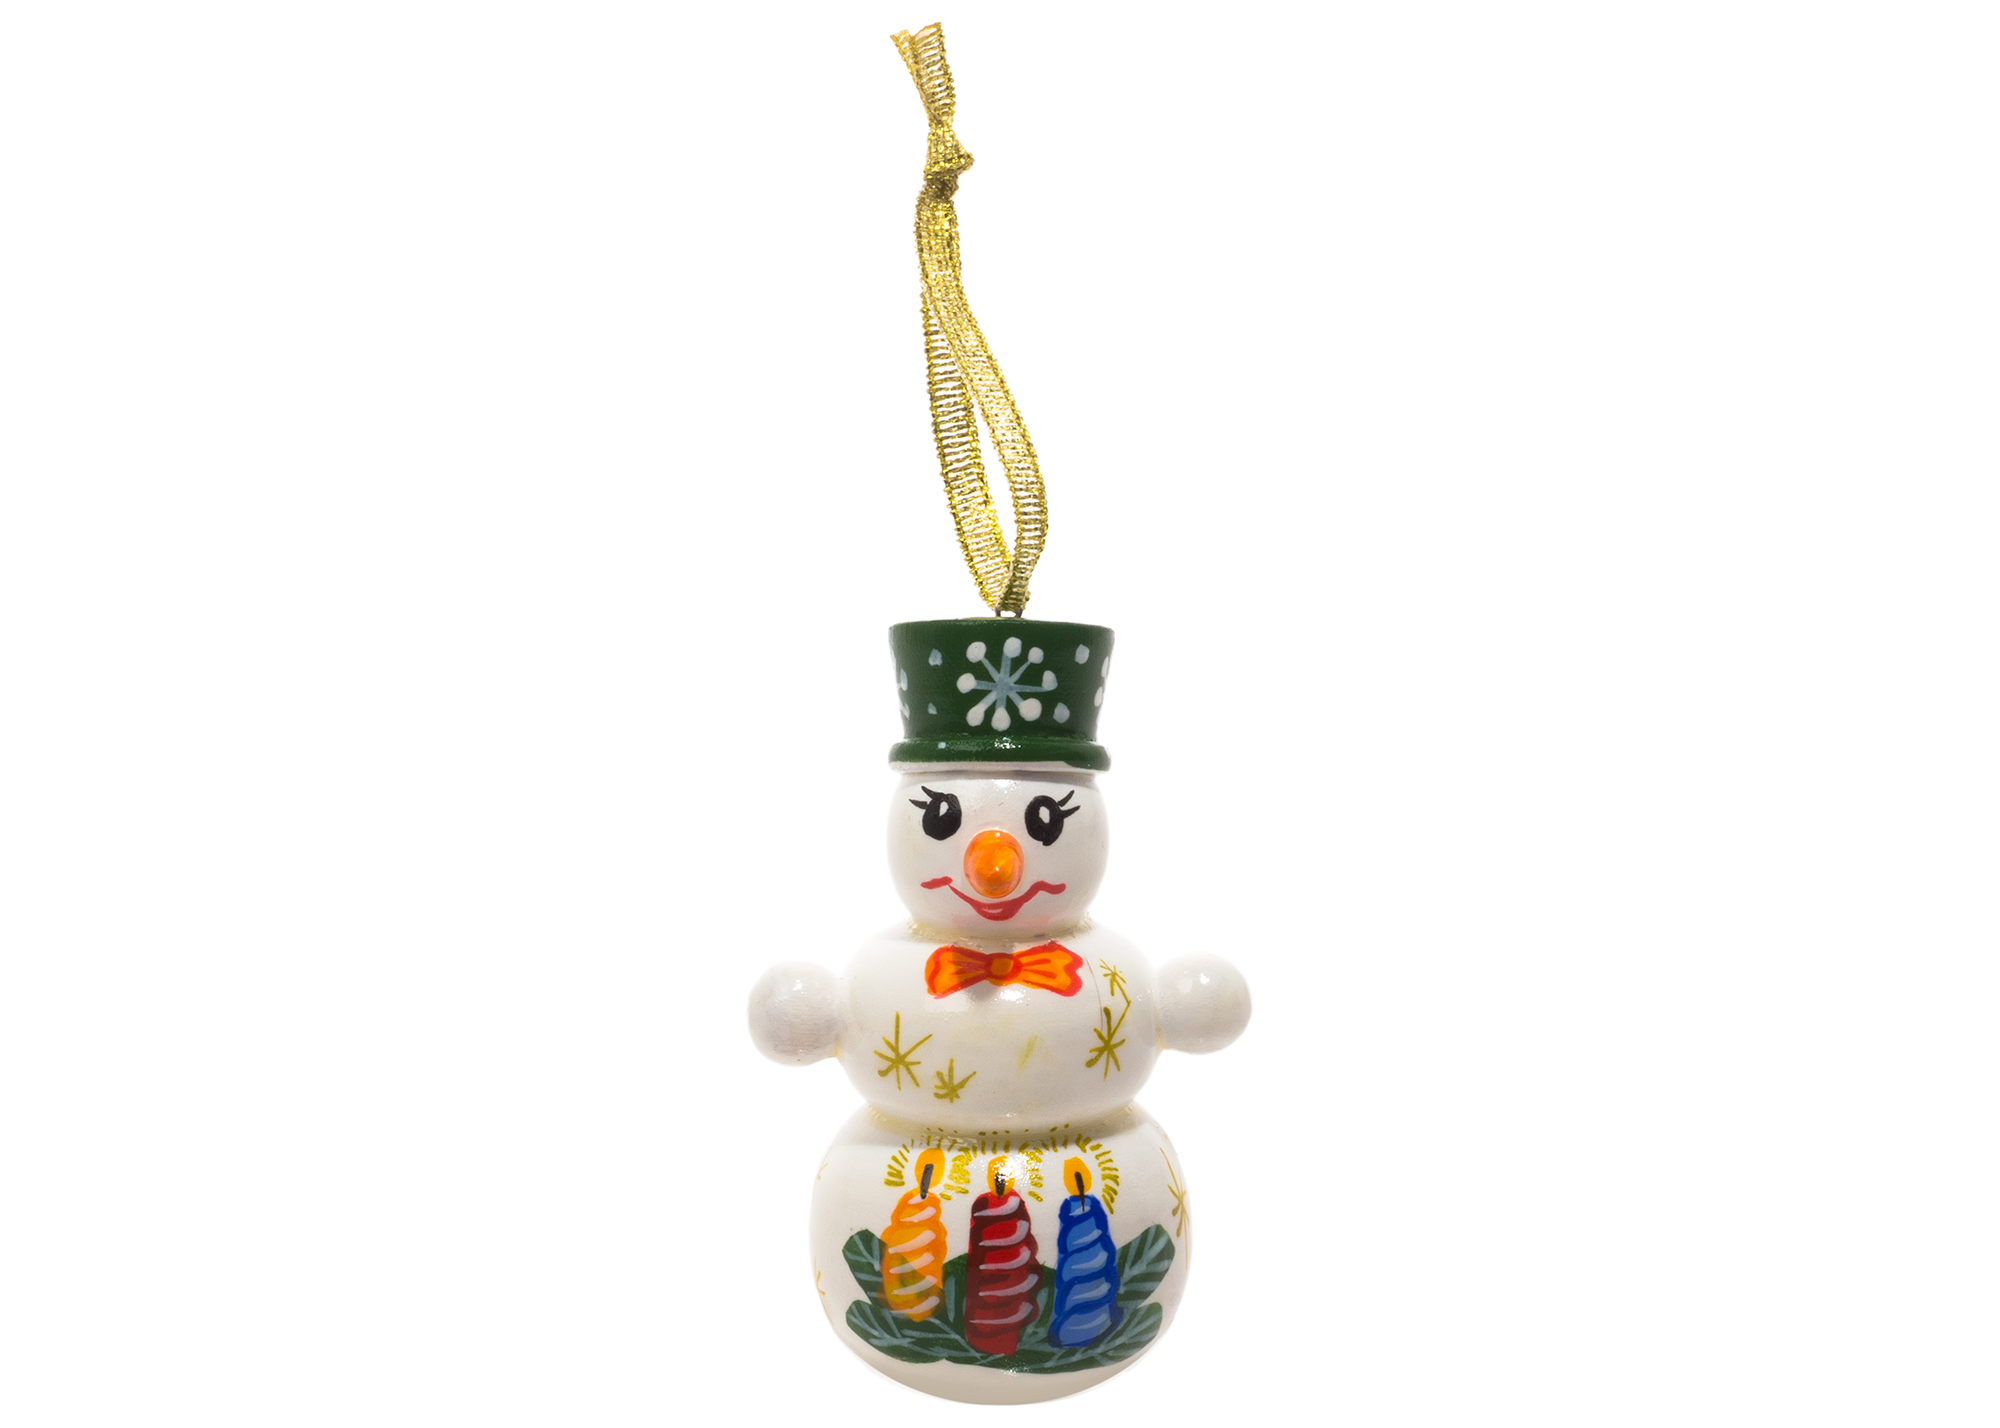 Buy Елочное украшение "Снеговик в шляпе" 7,5 см at GoldenCockerel.com